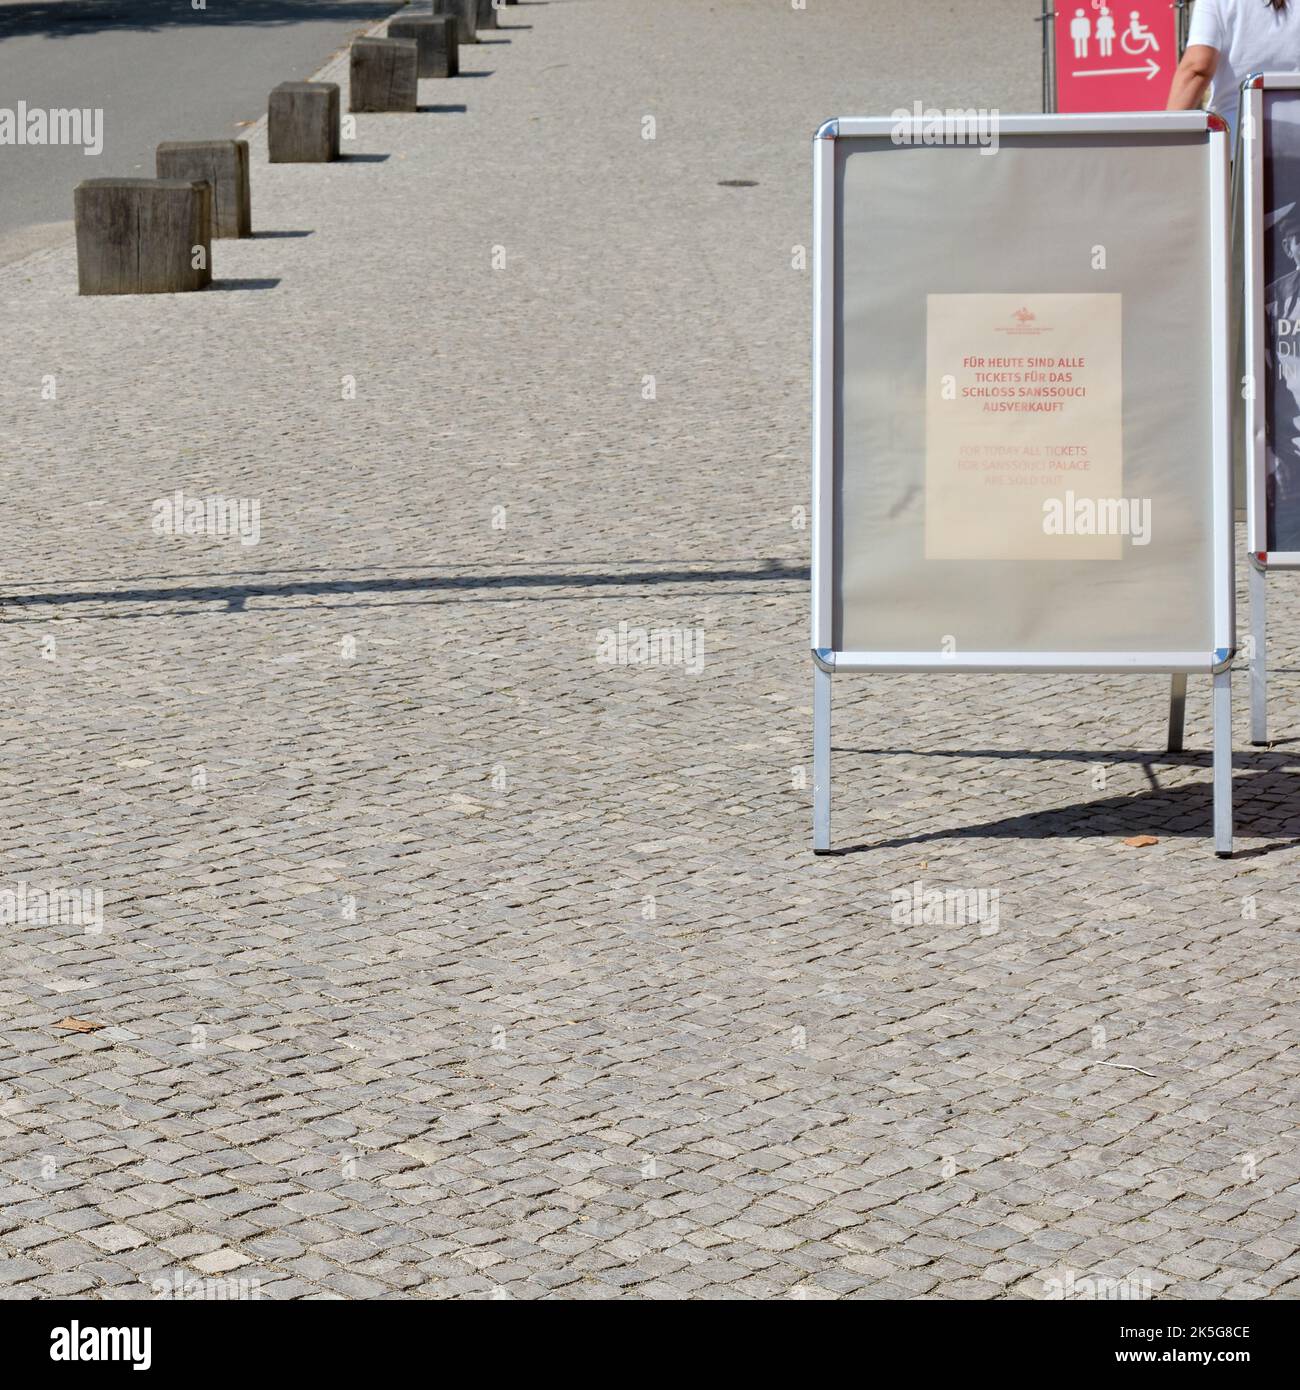 Freundliche Mitteilung, Plakat, 'für heute sind alle Tickets für Schloss Sanssouci ausverkauft', Sanssouci Park, Potsdam, Brandenburg, Deutschland, 6. August 2021. Stockfoto